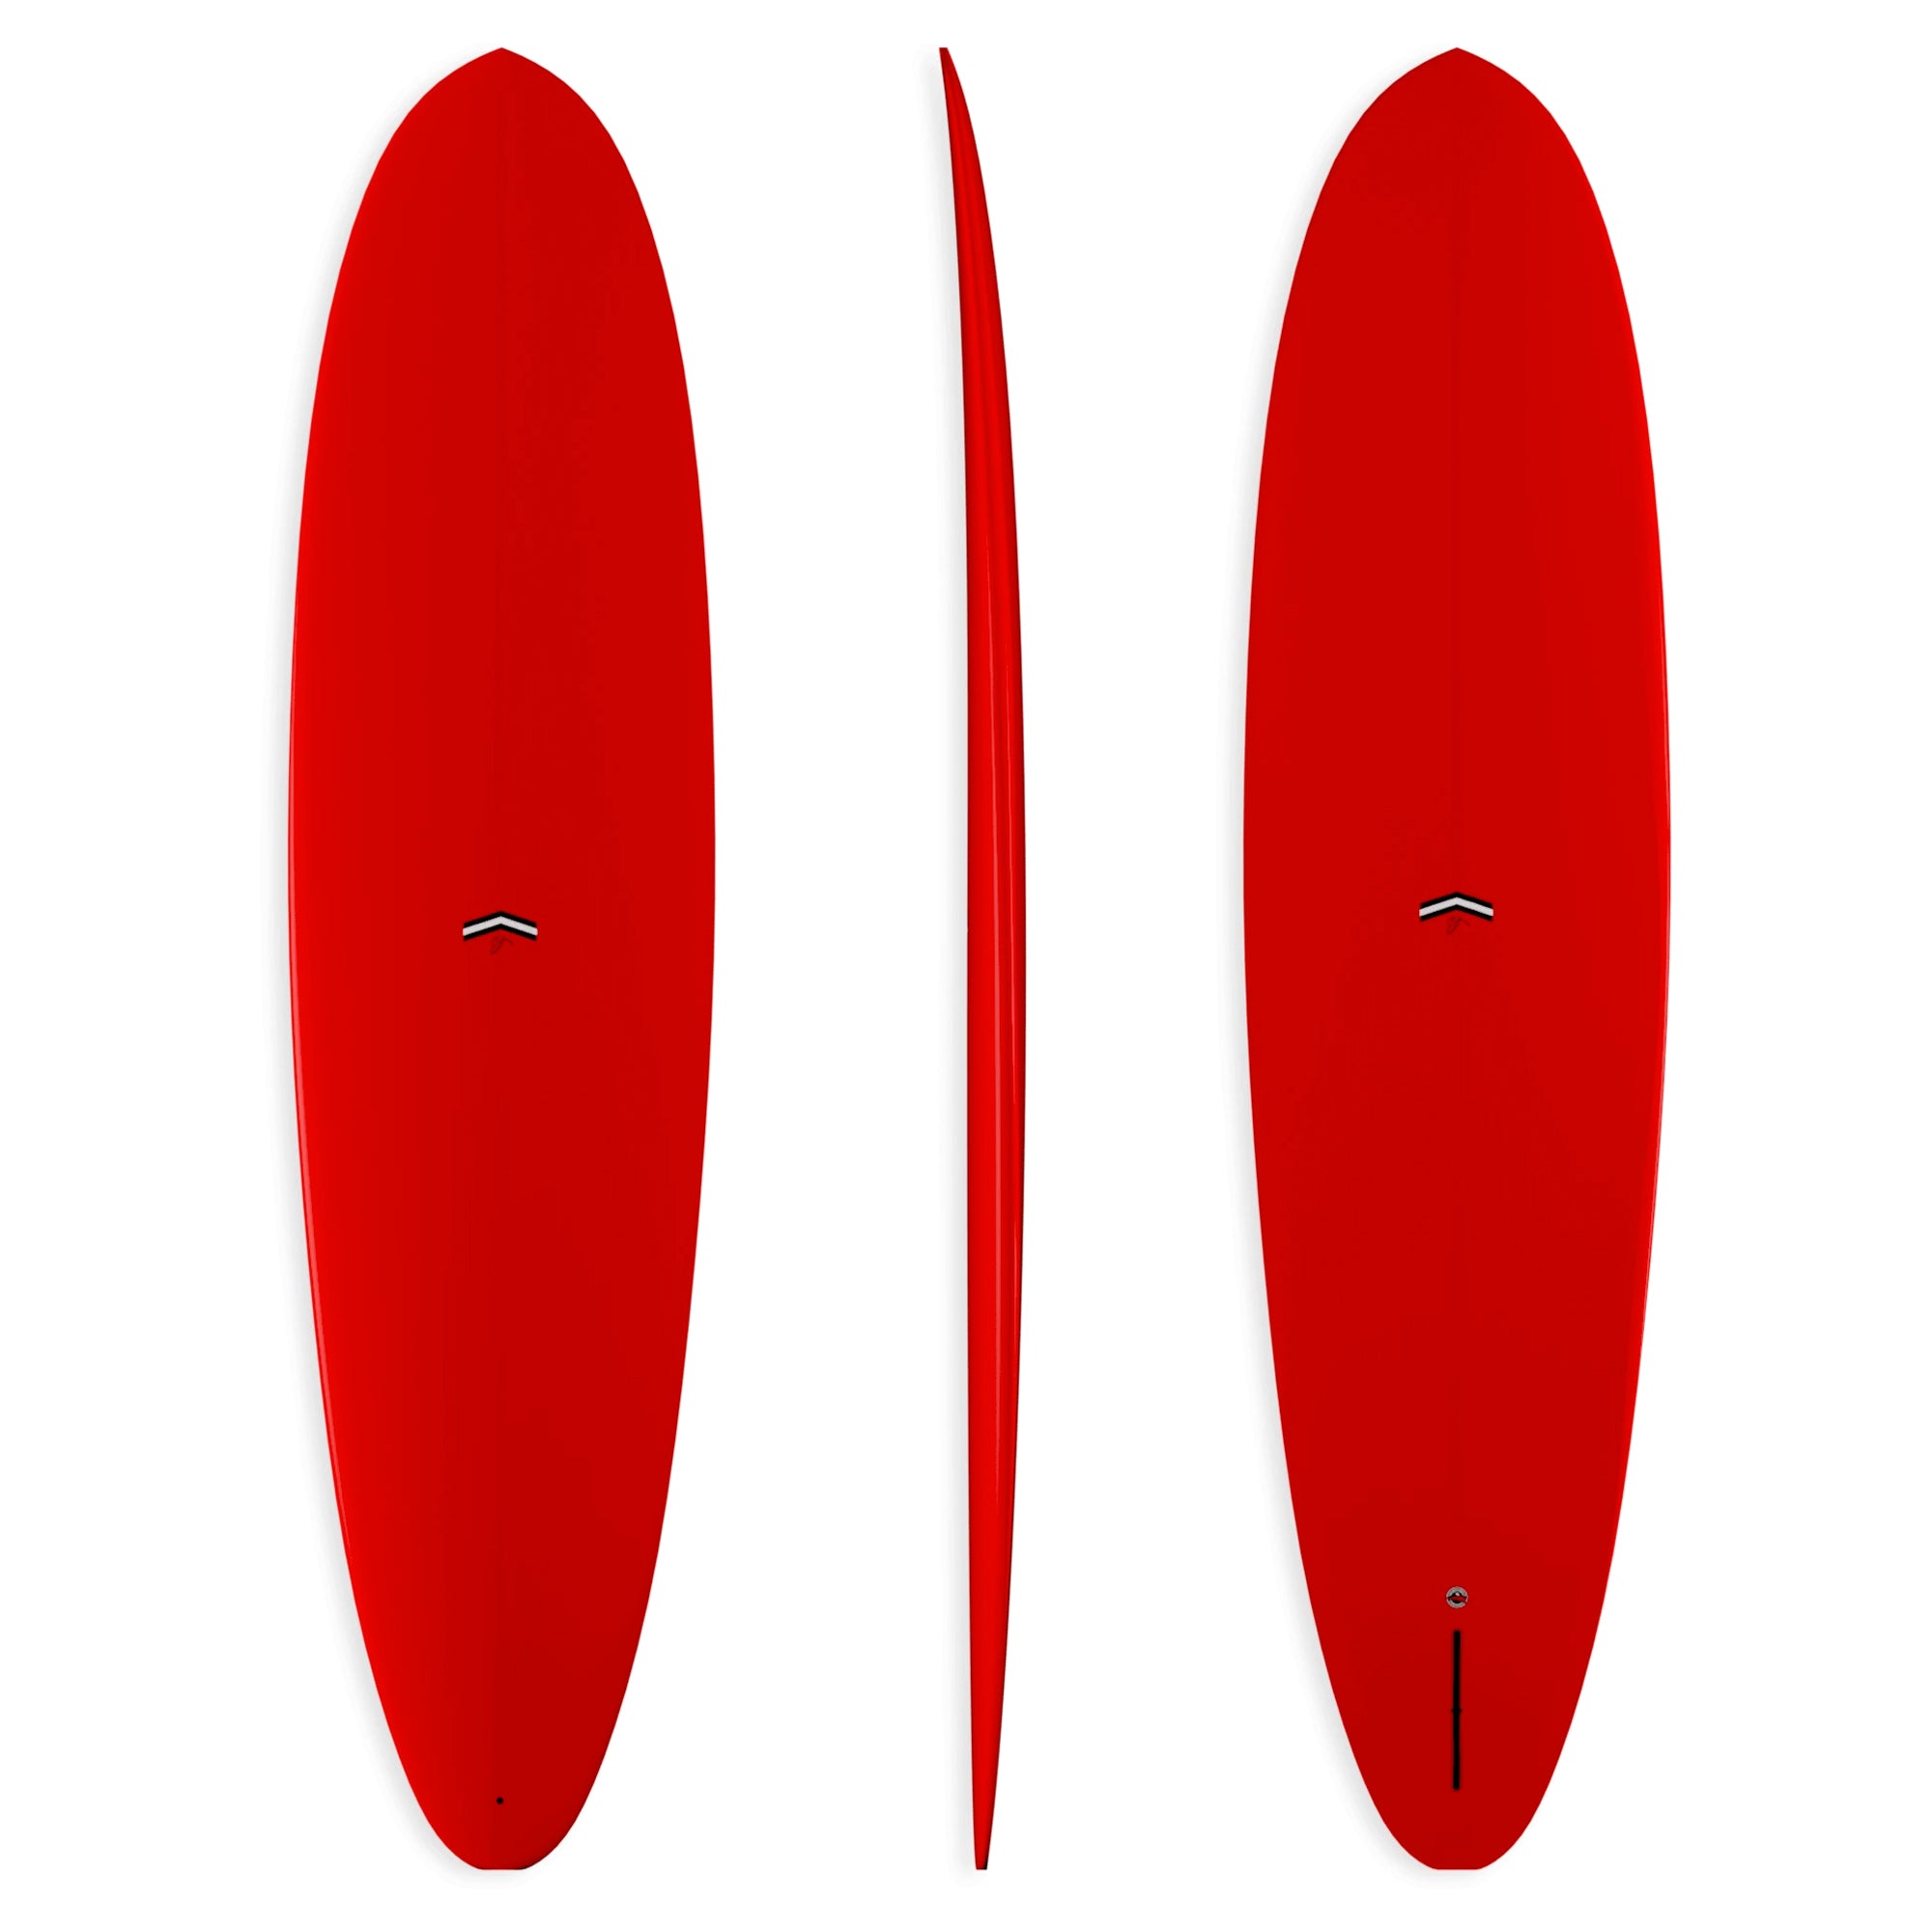 CJ Nelson Outlier Thunderbolt Surfboard